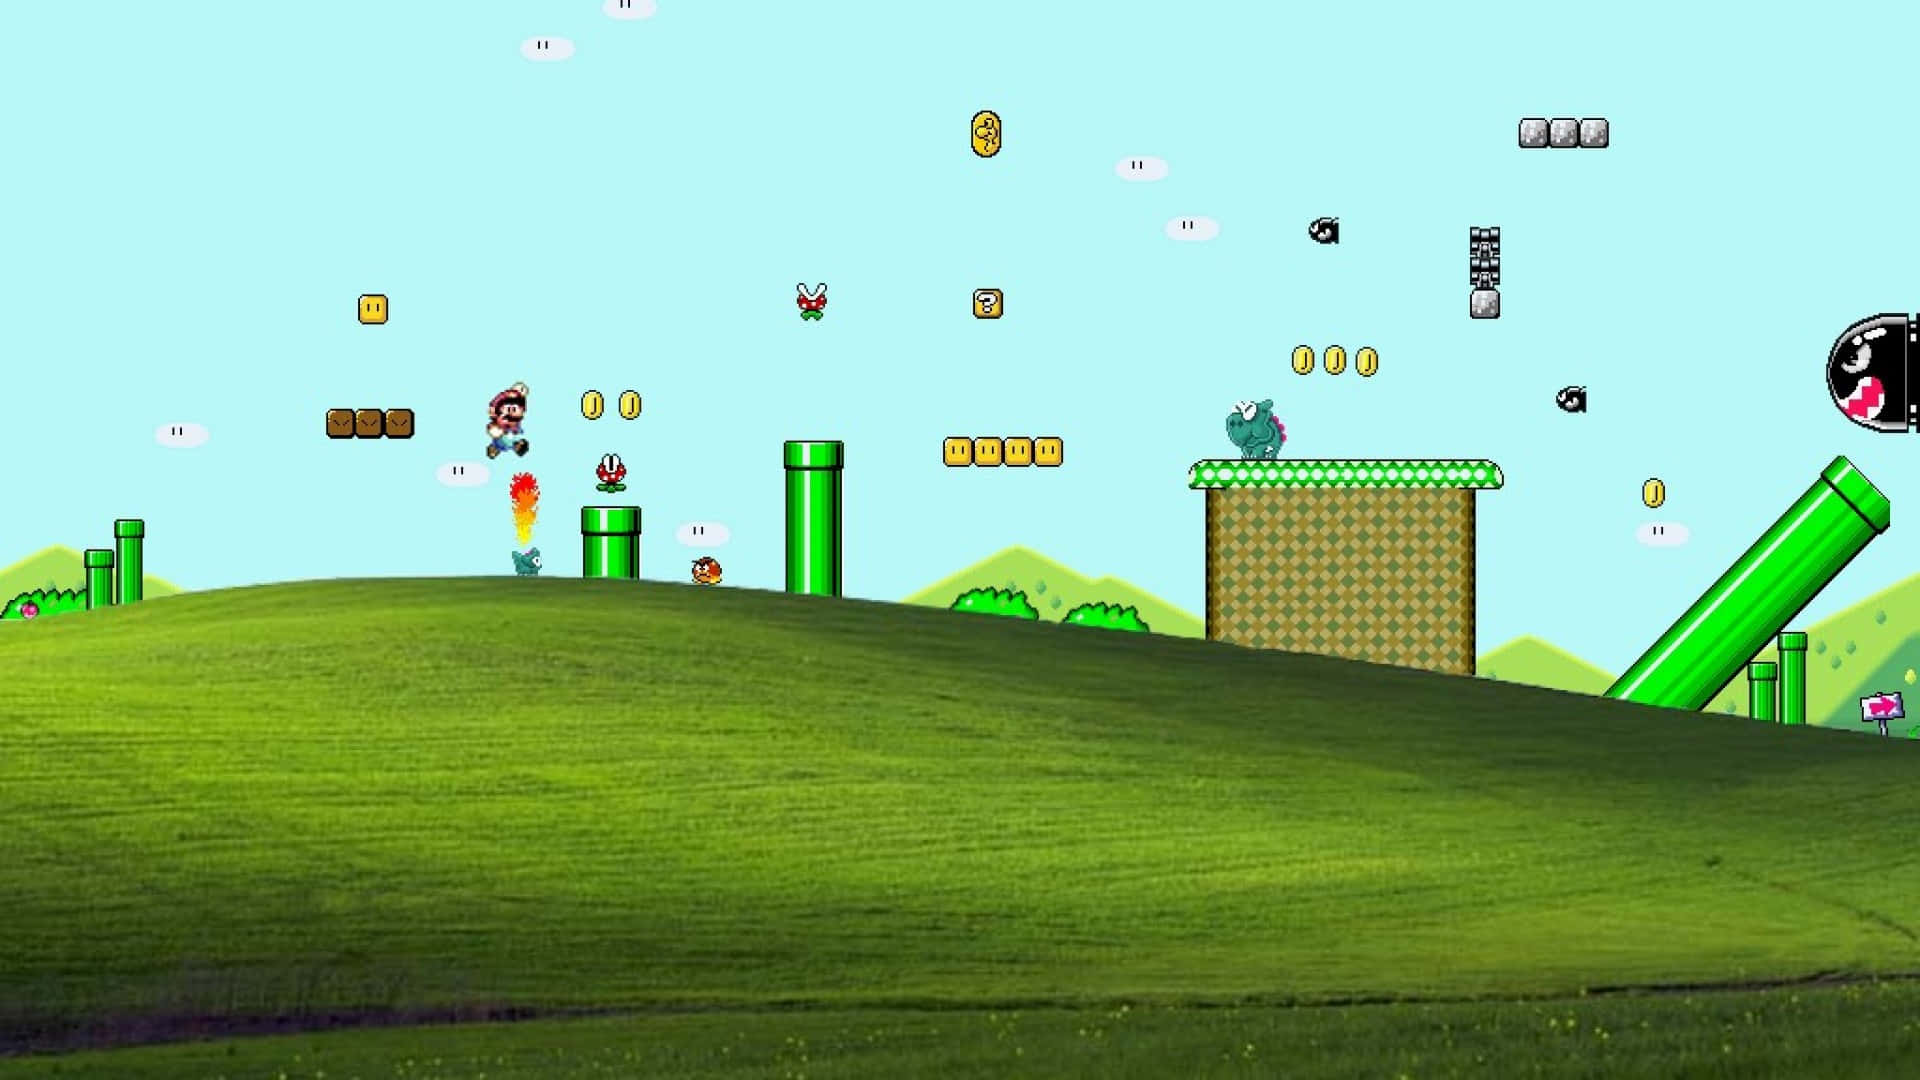 Super Mario World Adventure in Colorful Landscape